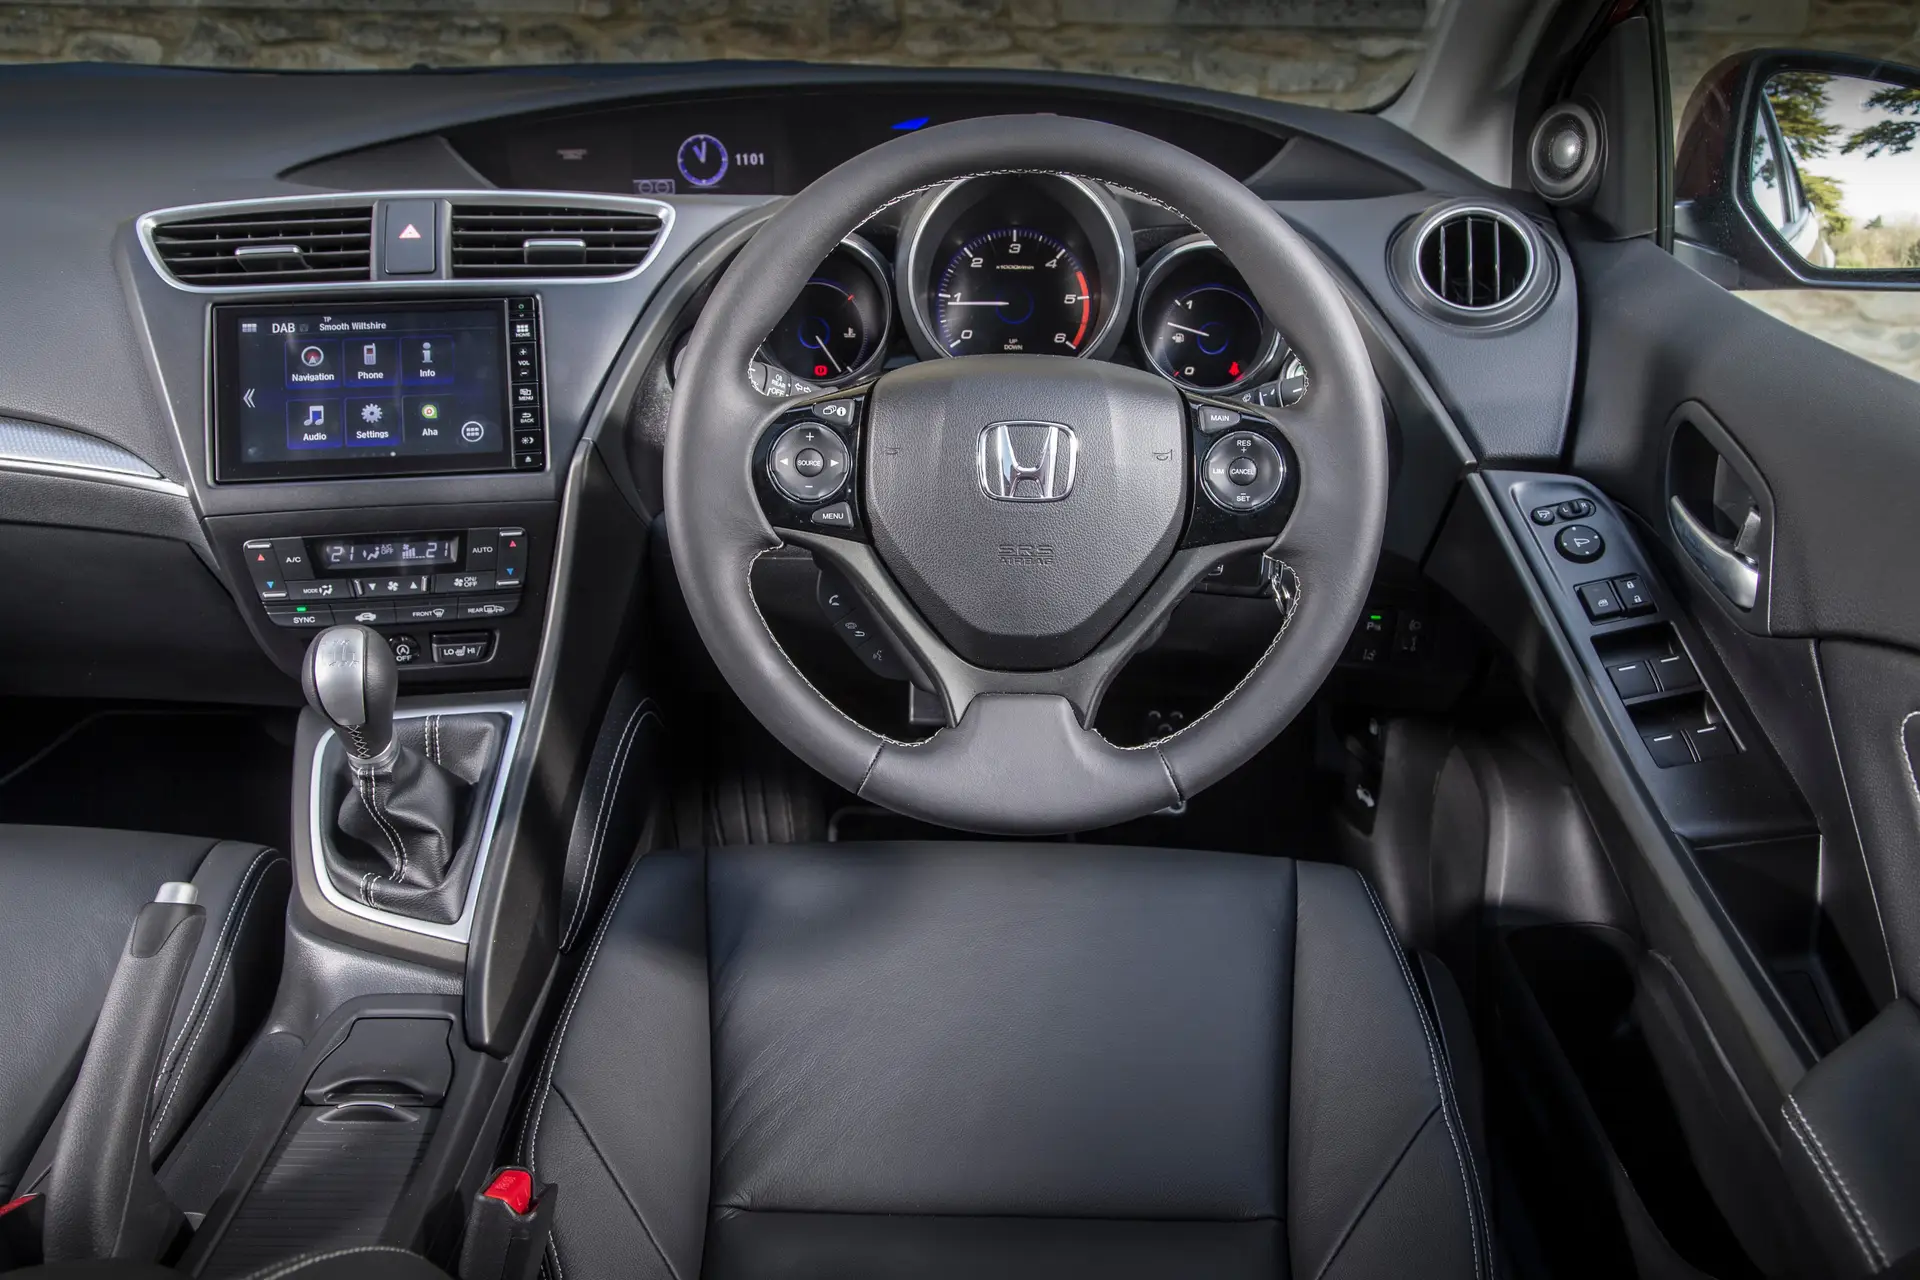 Honda Civic Tourer (2014-2017) Review: interior close up photo of the Honda Civic Tourer dashboard